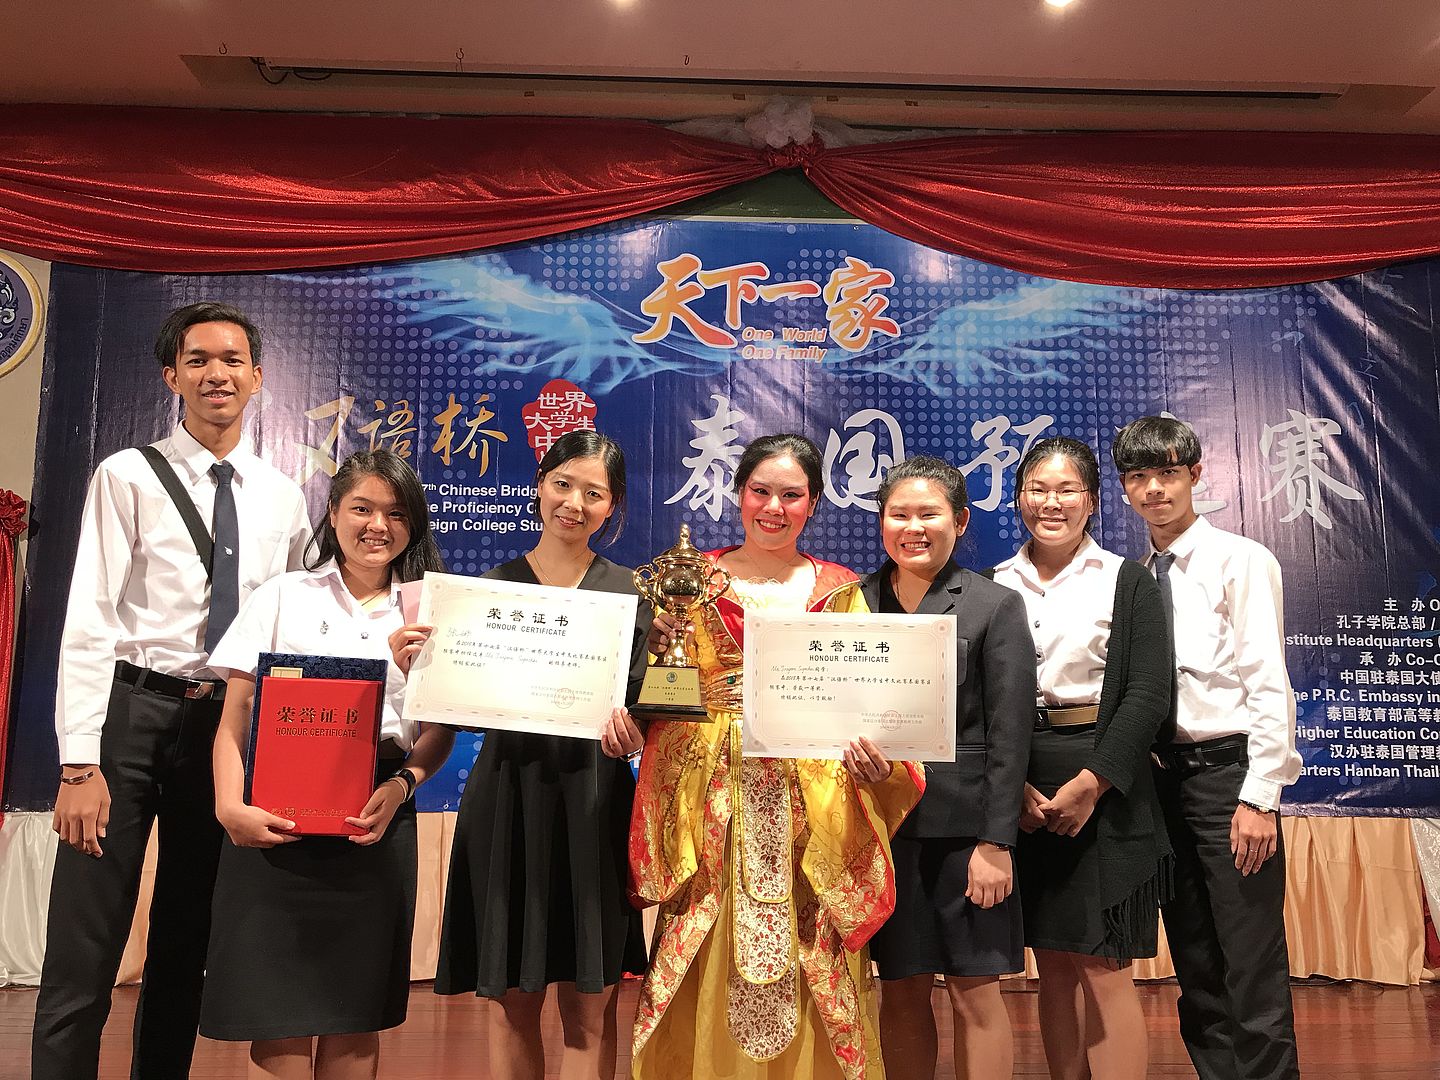 นักศึกษาจีนวิทยาคว้ารางวัลชนะเลิศ ได้เป็นตัวแทนประเทศไทยแข่งระดับนานาชาติที่จีน ก.ค. นี้